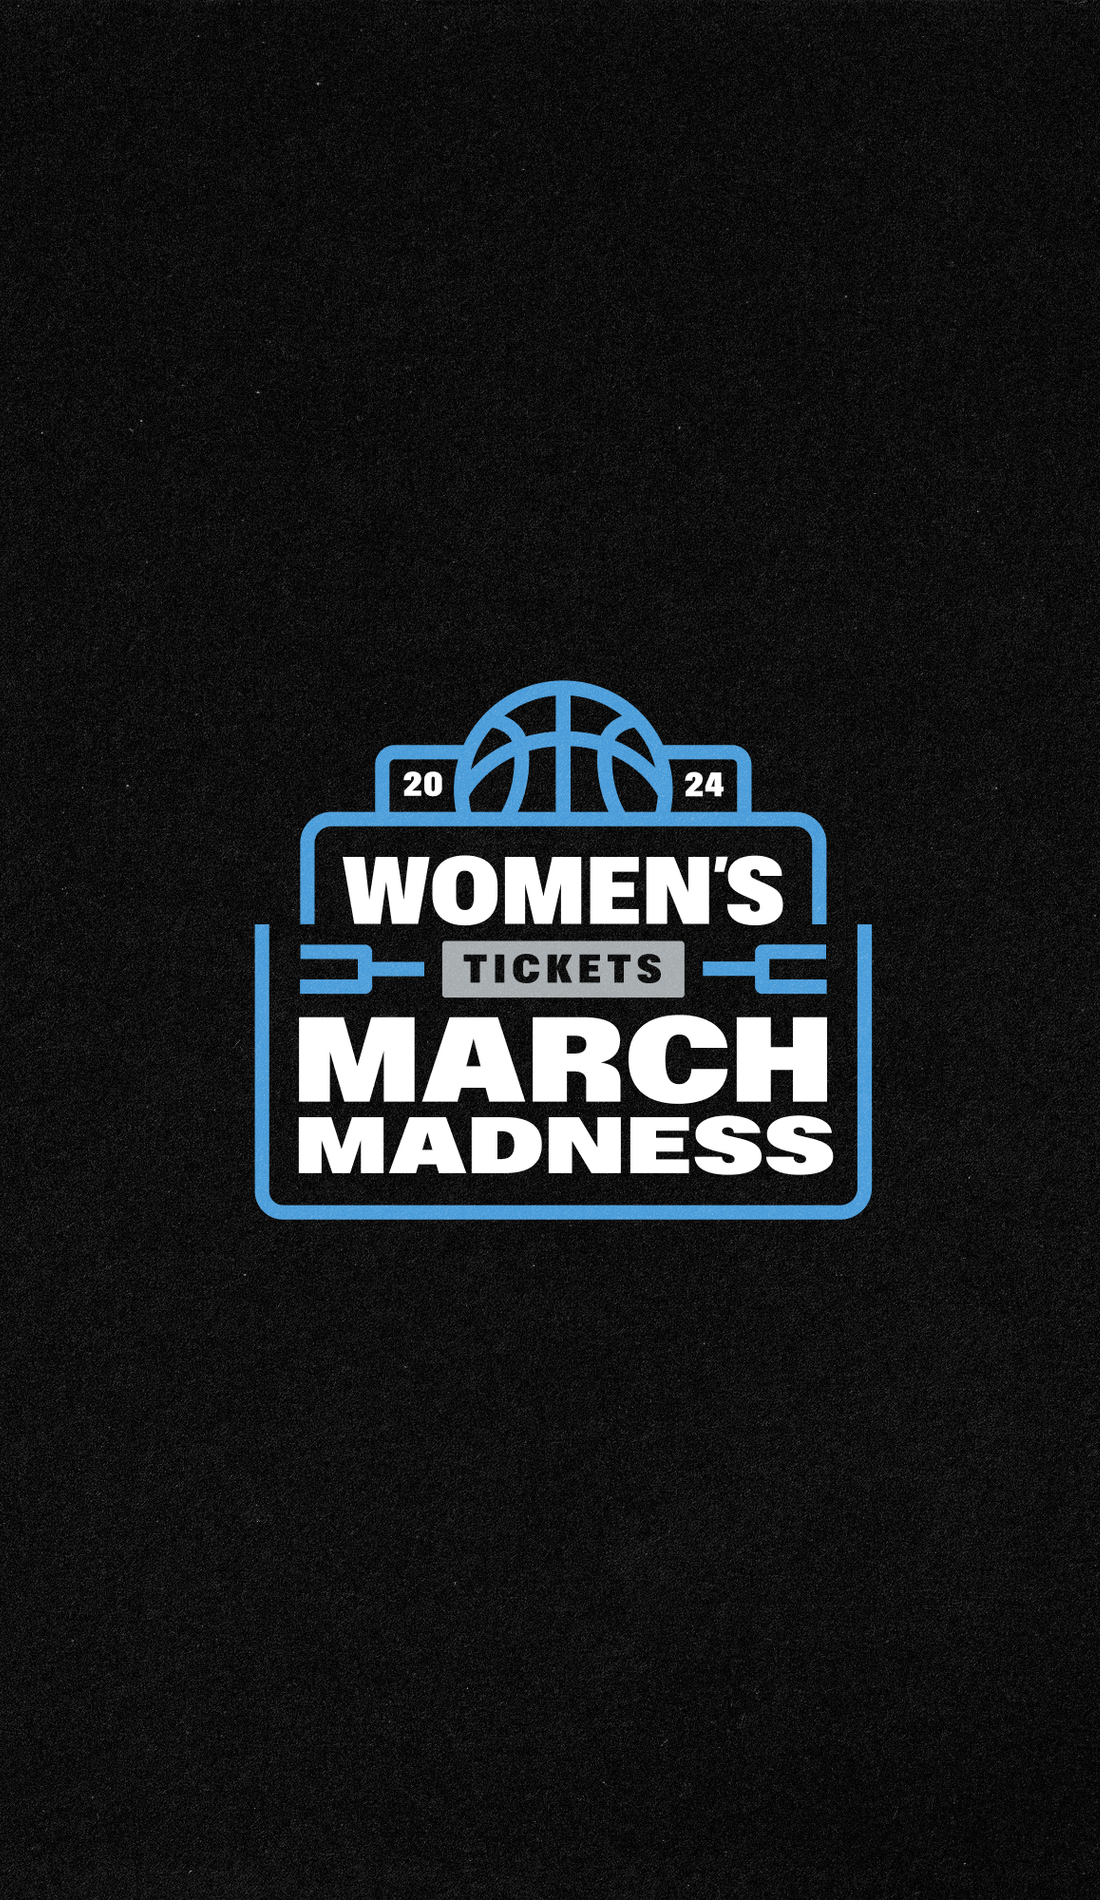 A NCAA Women's Basketball Tournament live event